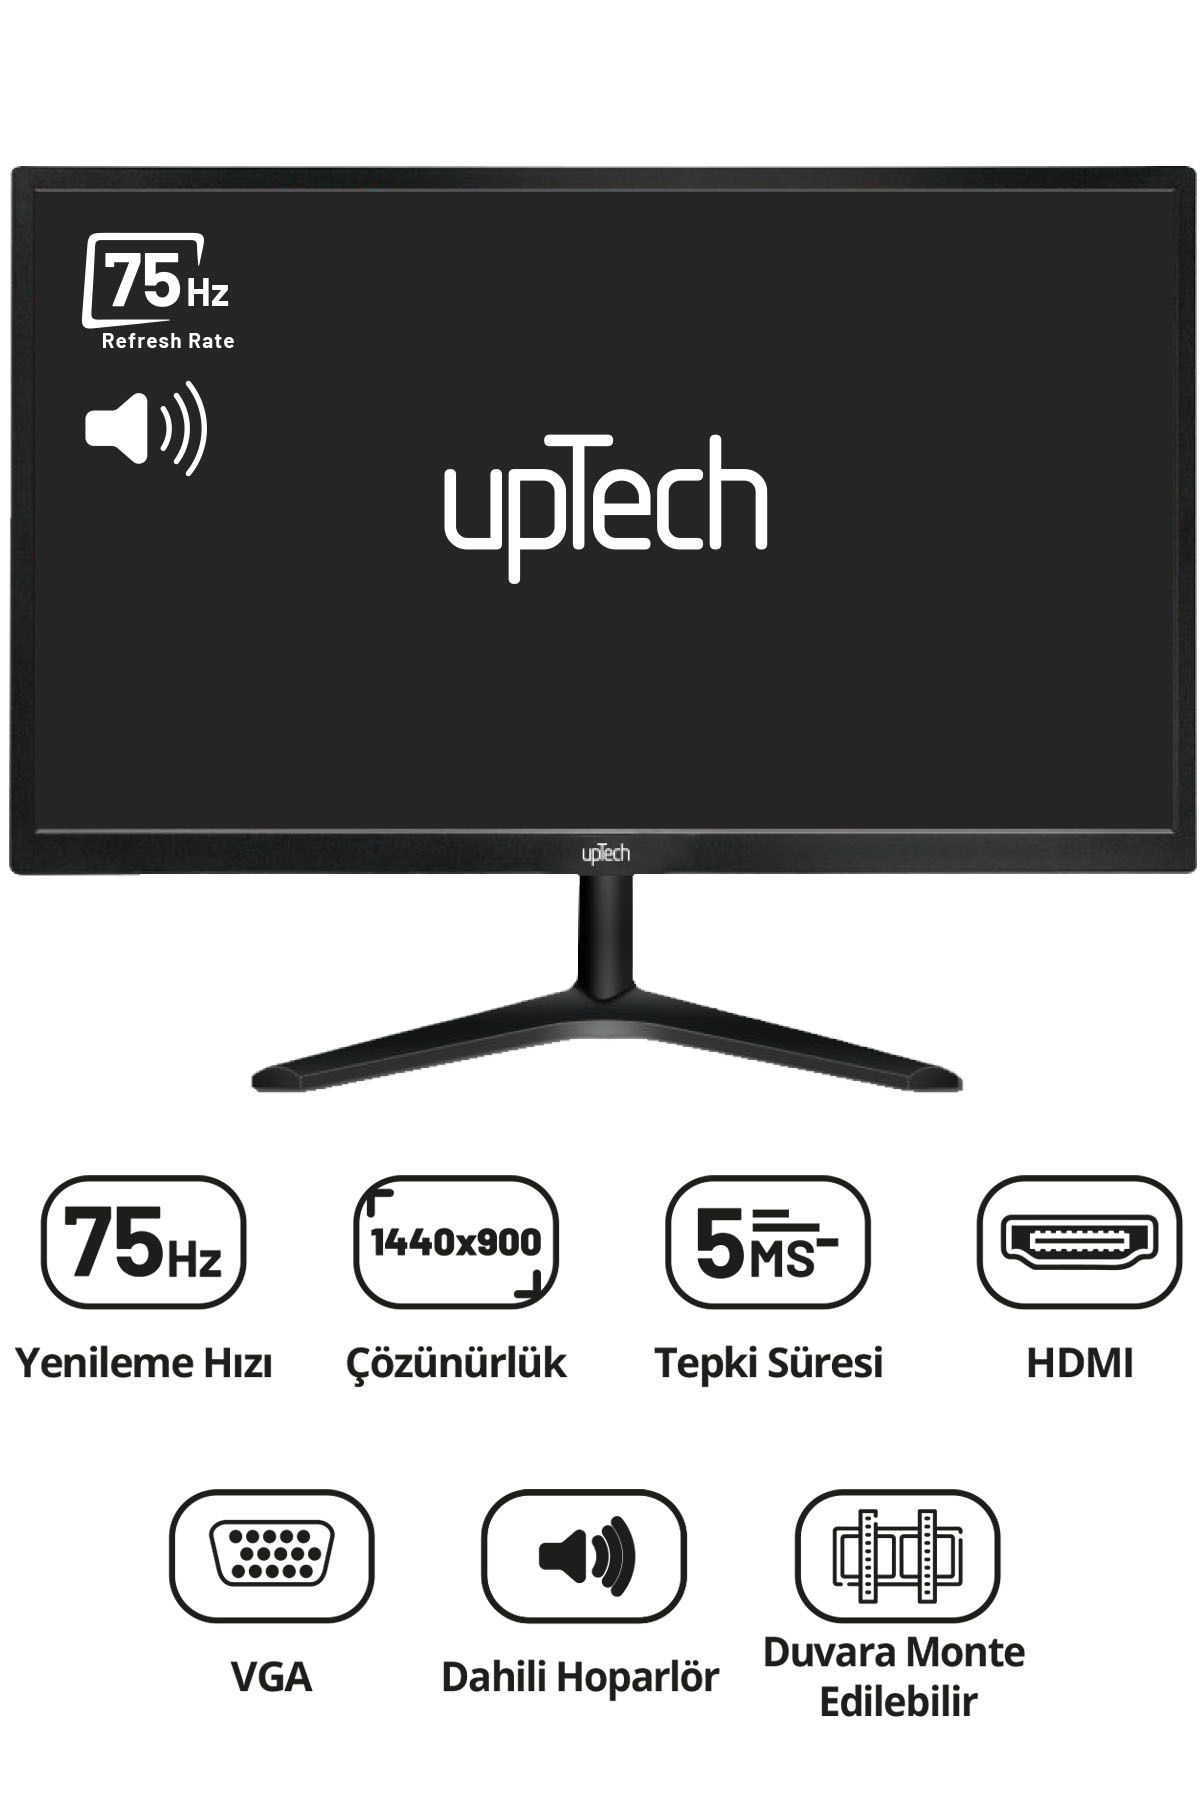 upTech HD190S 19" Geniş Ekran 75 Hz 5ms (VGA,HDMI,SES) Dahili Hoparlör Led Monitör